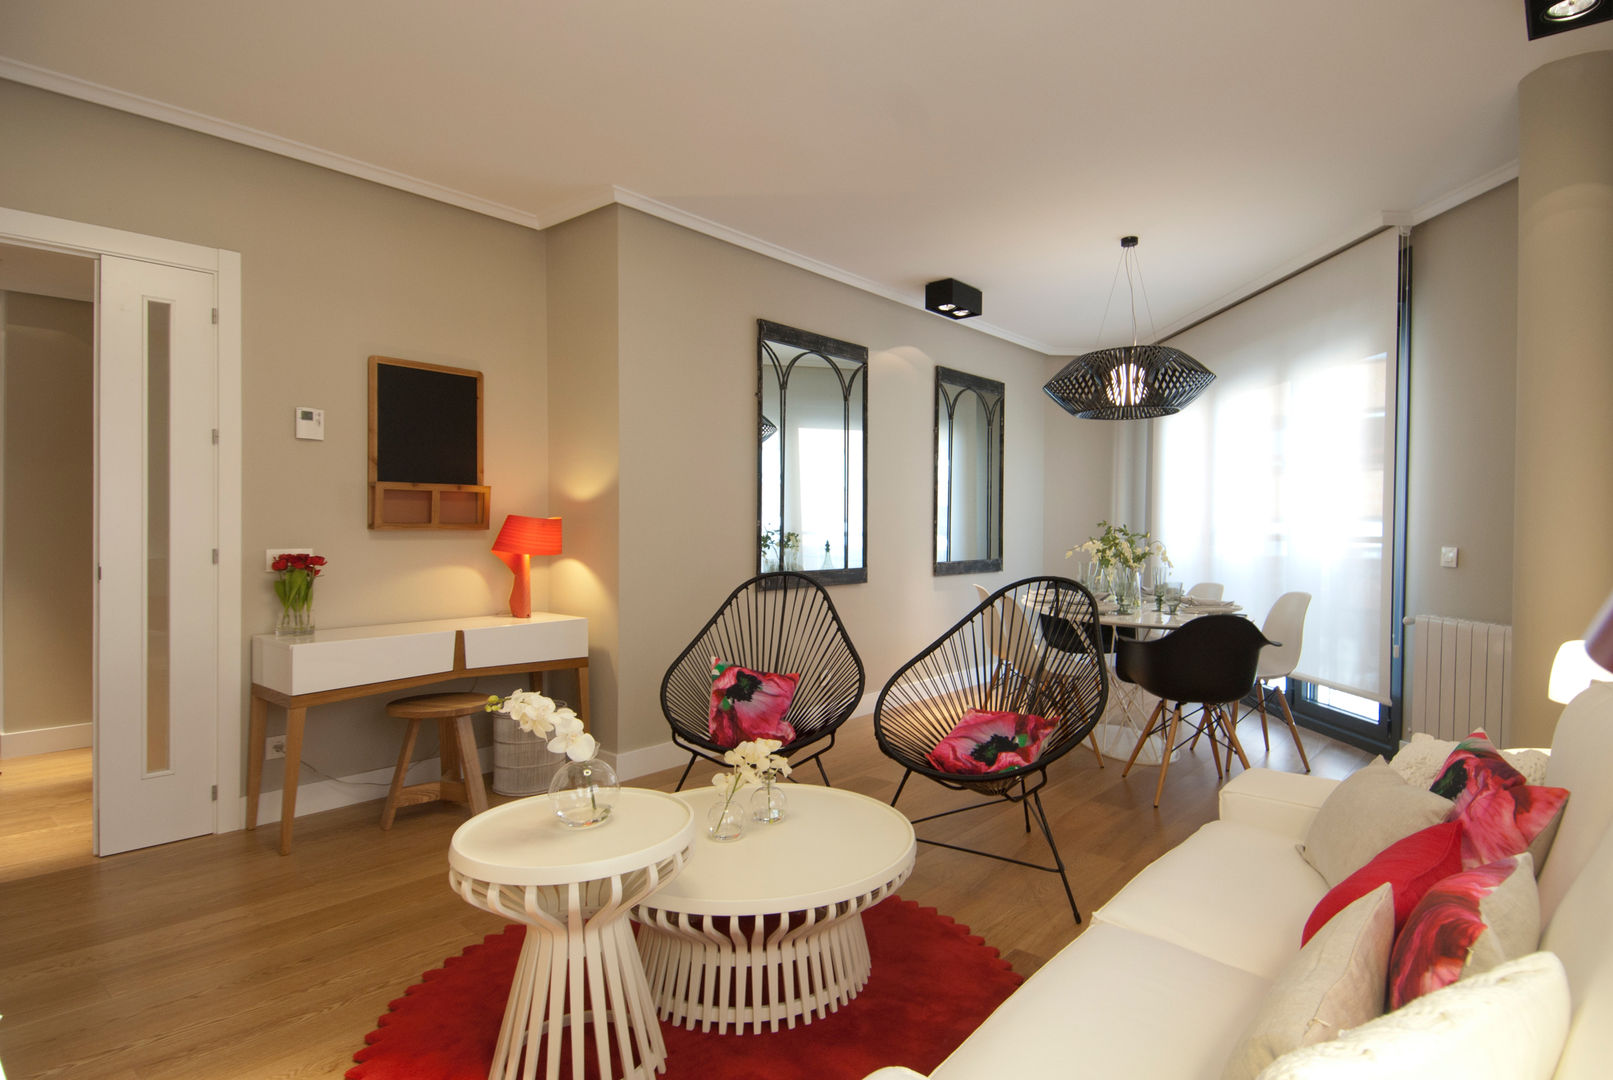 Proyecto de decoración de vivienda en Bilbao, Sube Susaeta Interiorismo - Sube Contract, Sube Interiorismo Sube Interiorismo Living room